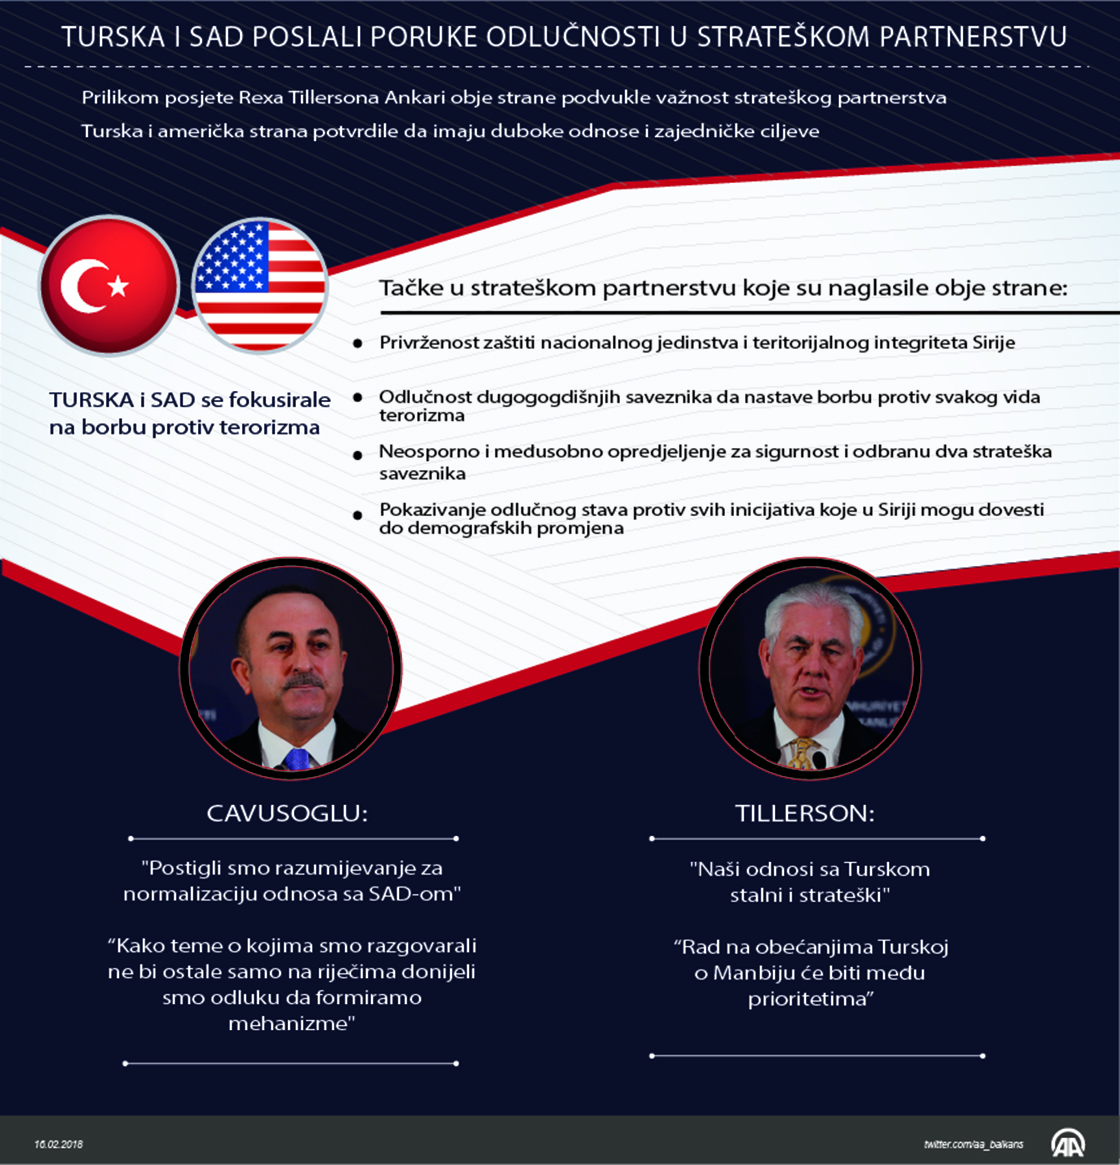 Cavusoglu i Tillerson dogovorili formiranje zajedničkog mehanizma za rješavanje problema između Turske i SAD-a 